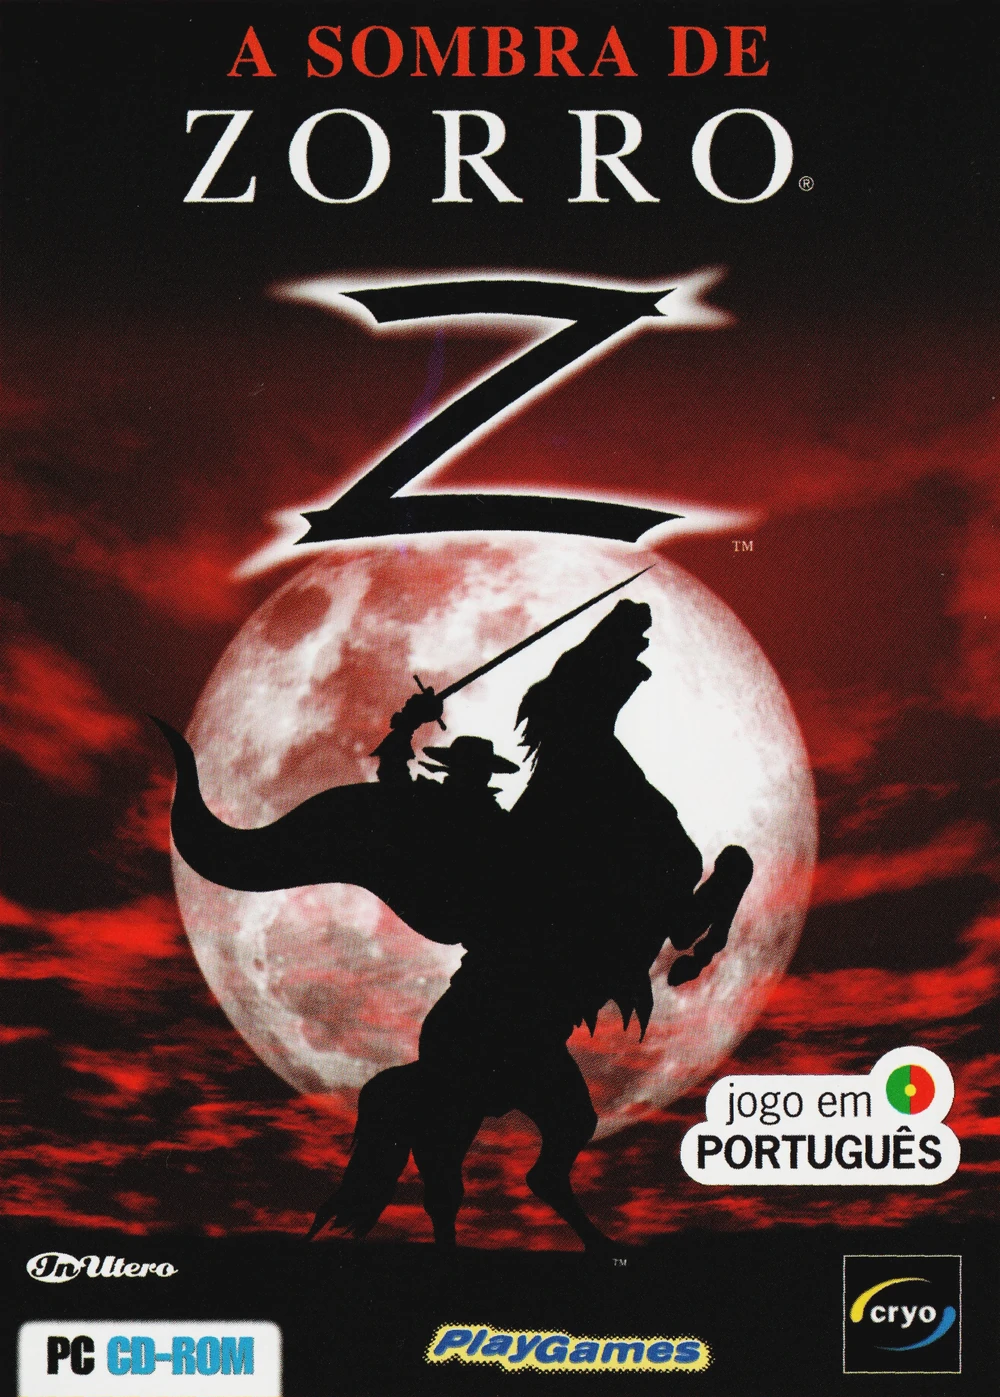 A Sombra de Zorro